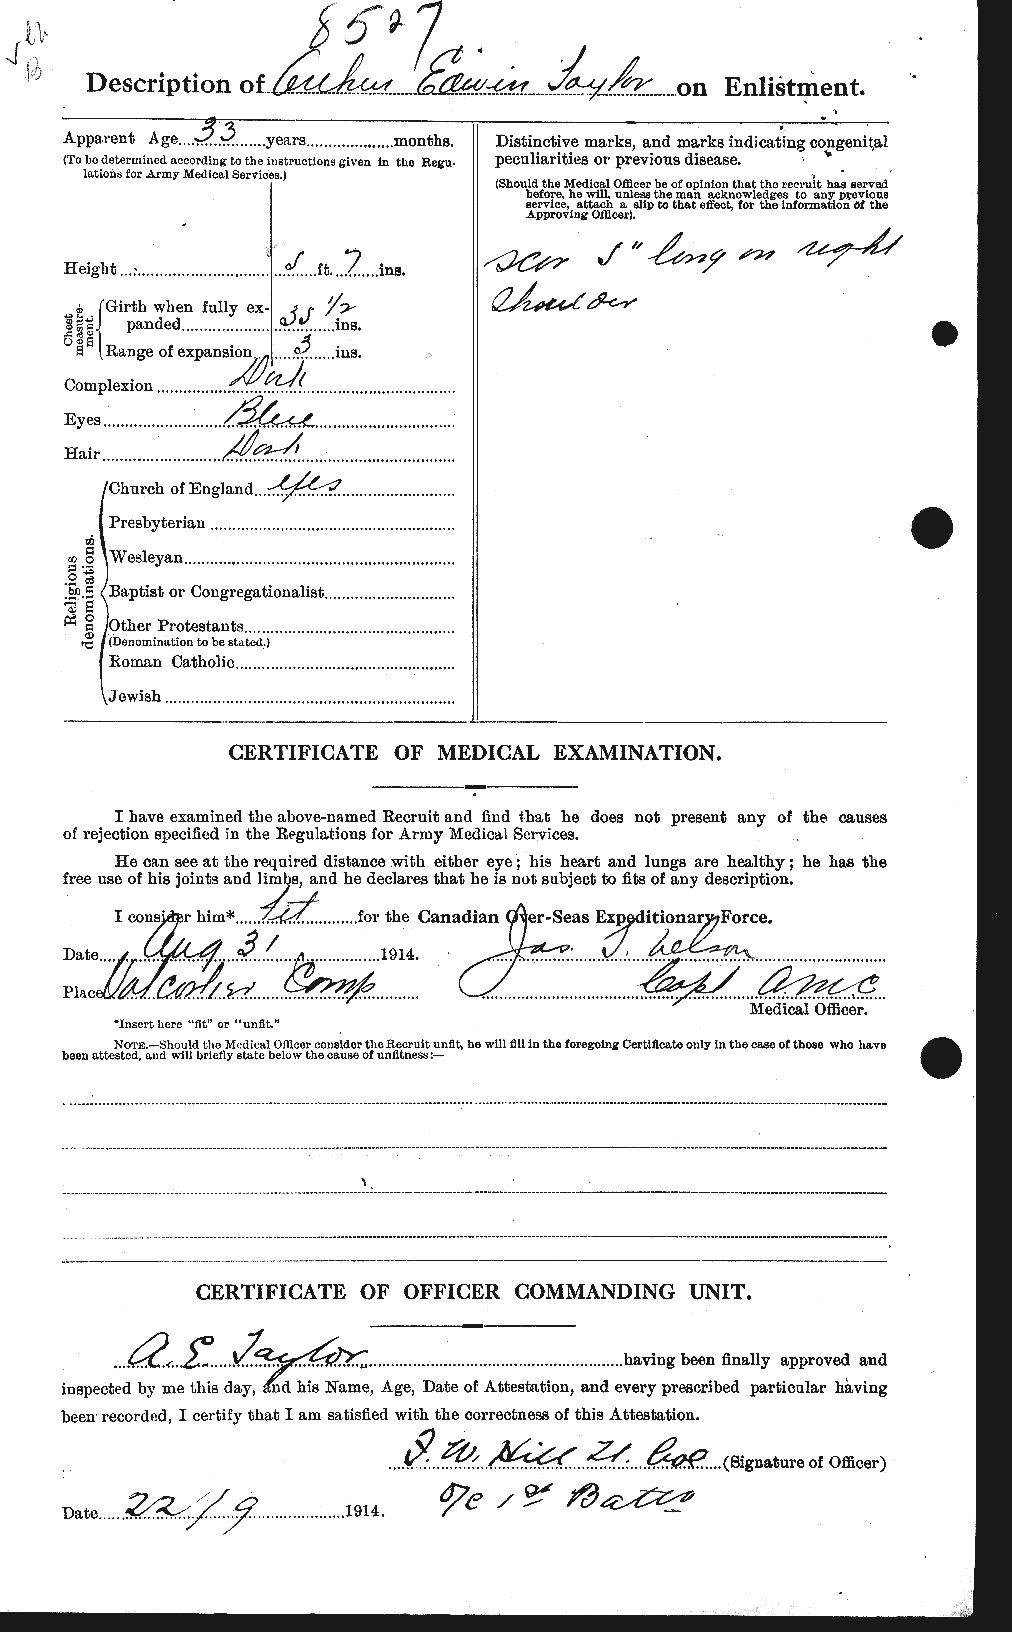 Dossiers du Personnel de la Première Guerre mondiale - CEC 626721b